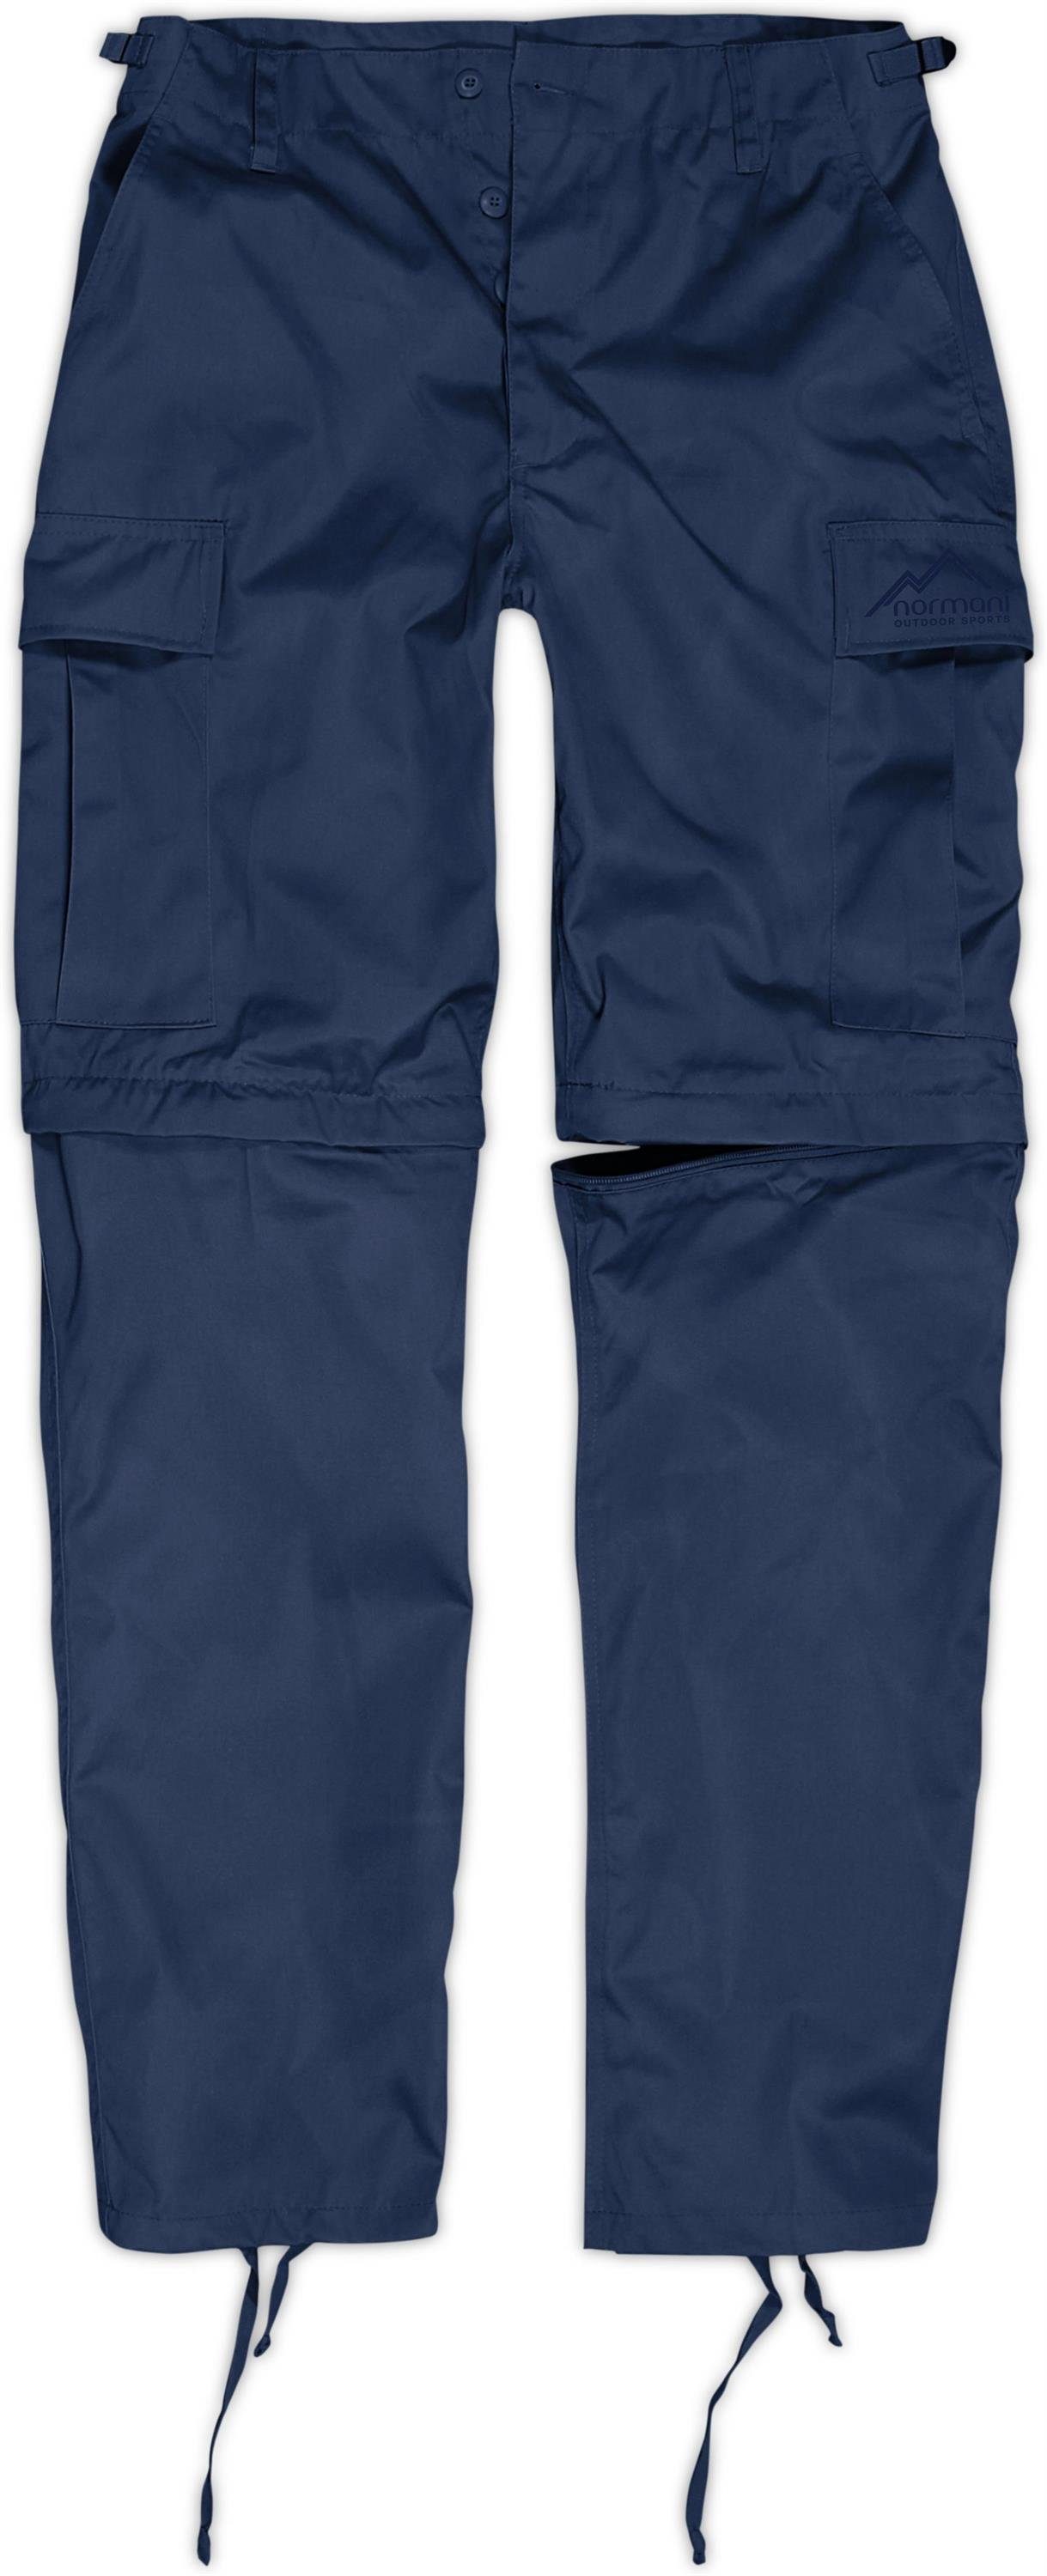 Outdoorhose Herren normani Feldhose abtrennbaren Zip-Off BDU Navy Hosenbeinen per 2-in-1 Pioneer Zip-off-Hose Rangerhose mit Reißverschluss